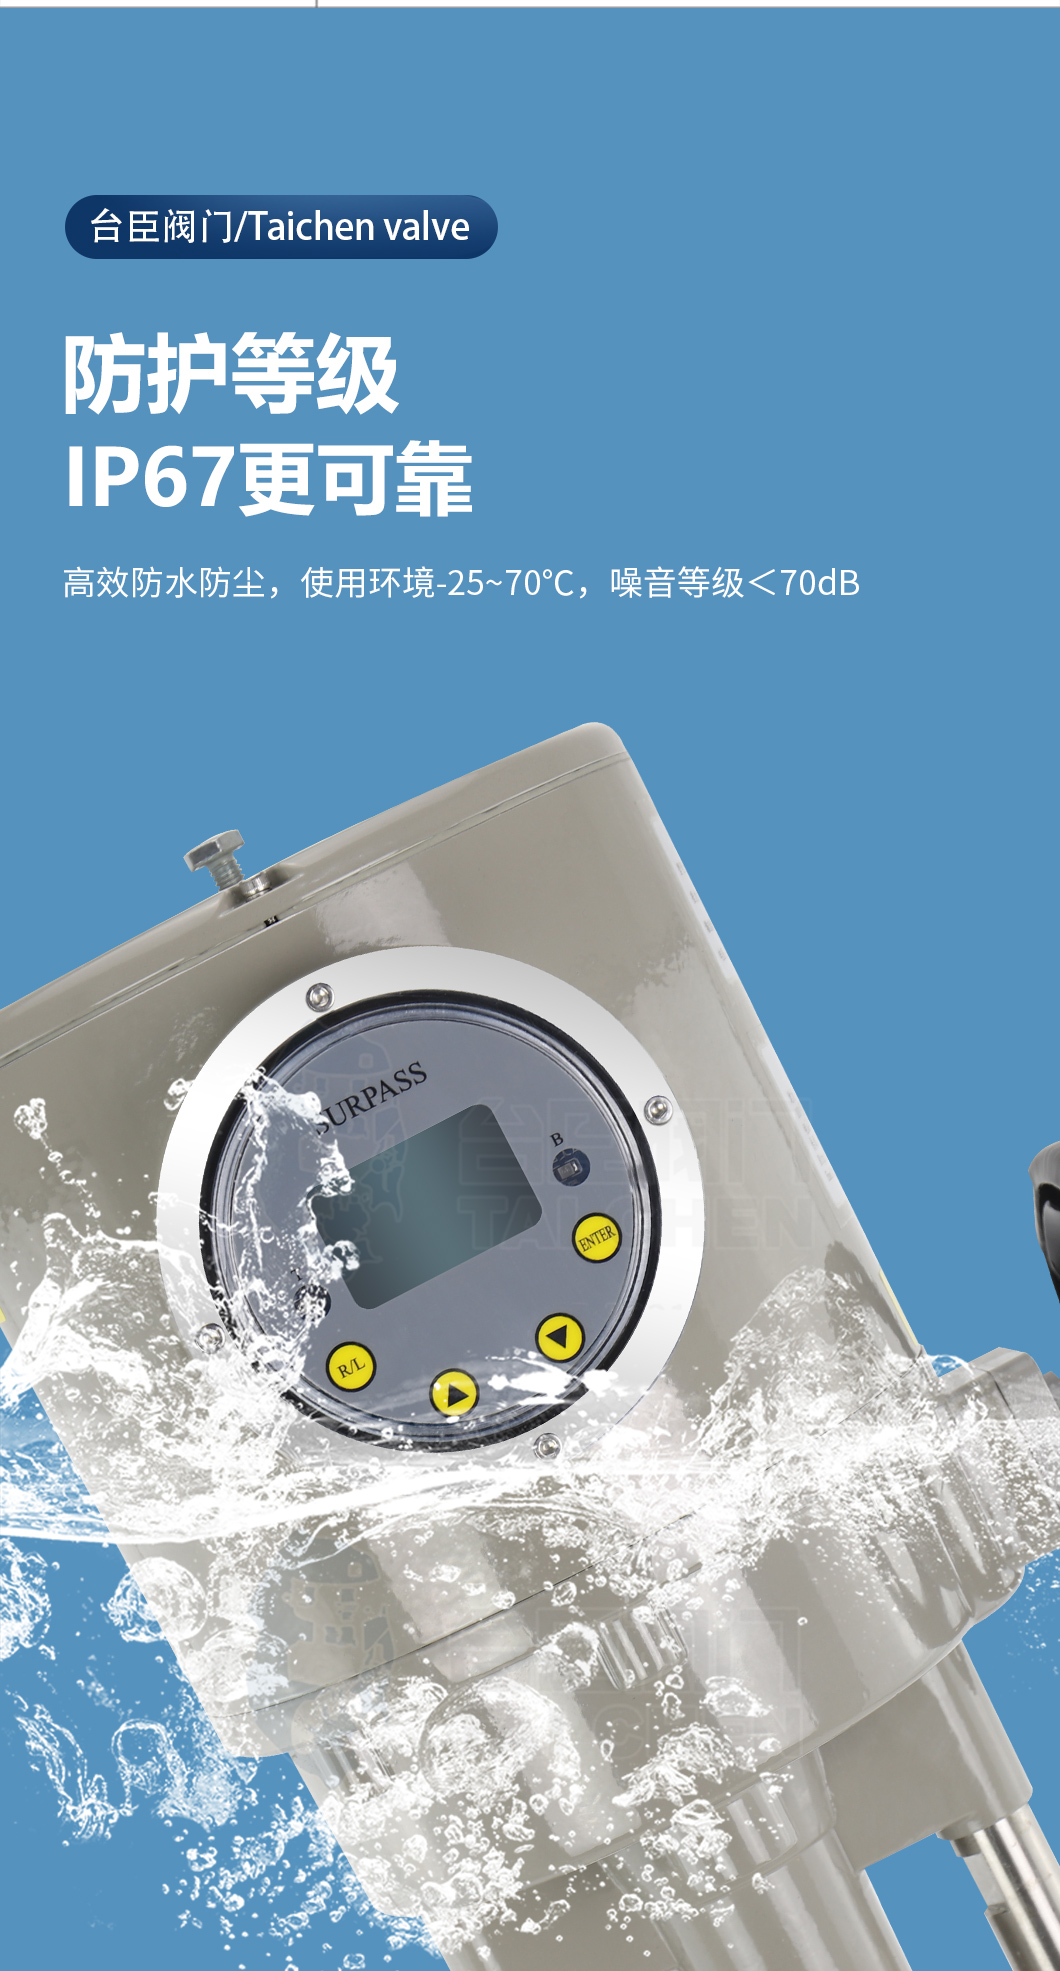 智能型电动执行器防护等级可达到IP67